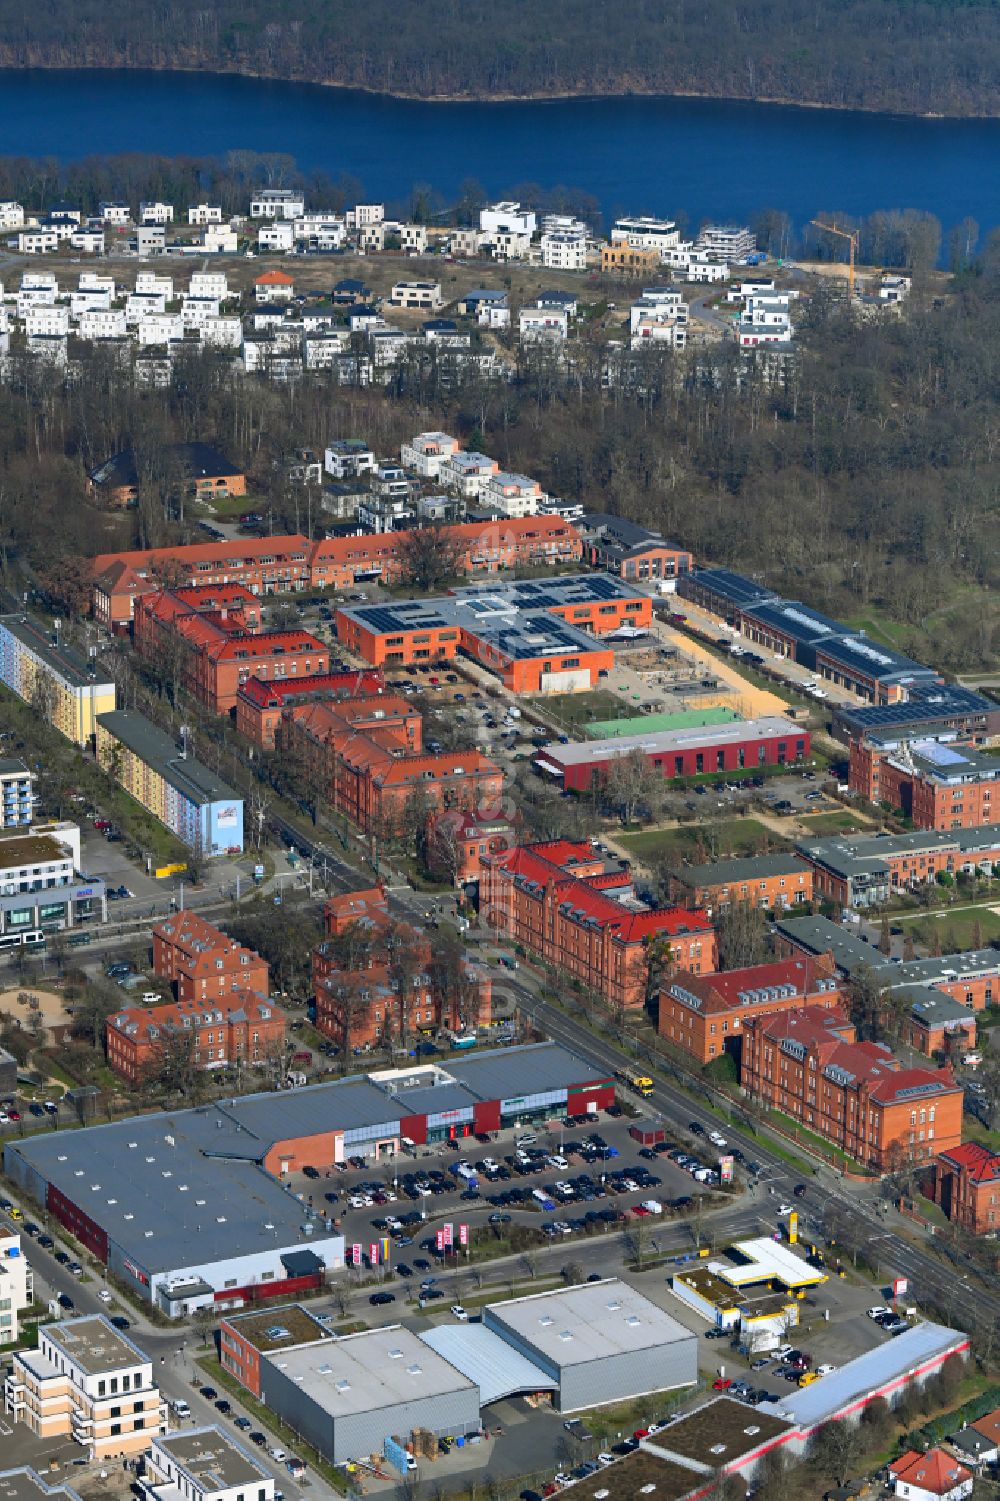 Luftaufnahme Potsdam - Wohngebiet der Mehrfamilienhaussiedlung Rote Kaserne in Potsdam im Bundesland Brandenburg, Deutschland